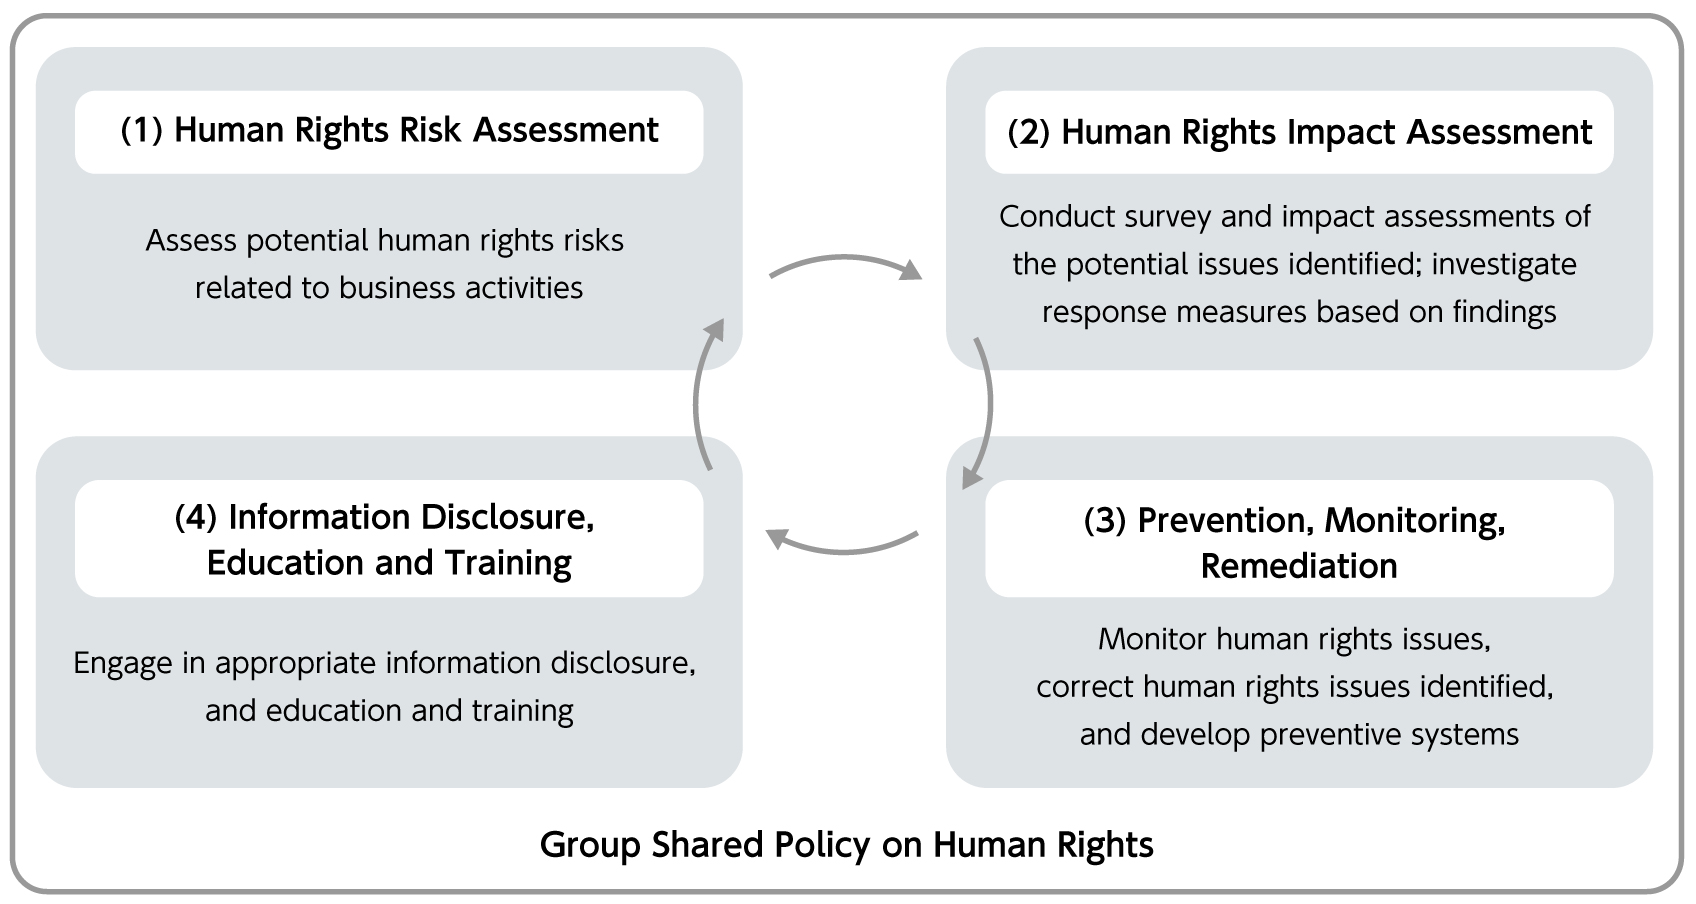 عملية العناية الواجبة في مجال حقوق الإنسان لمجموعة Ajinomoto